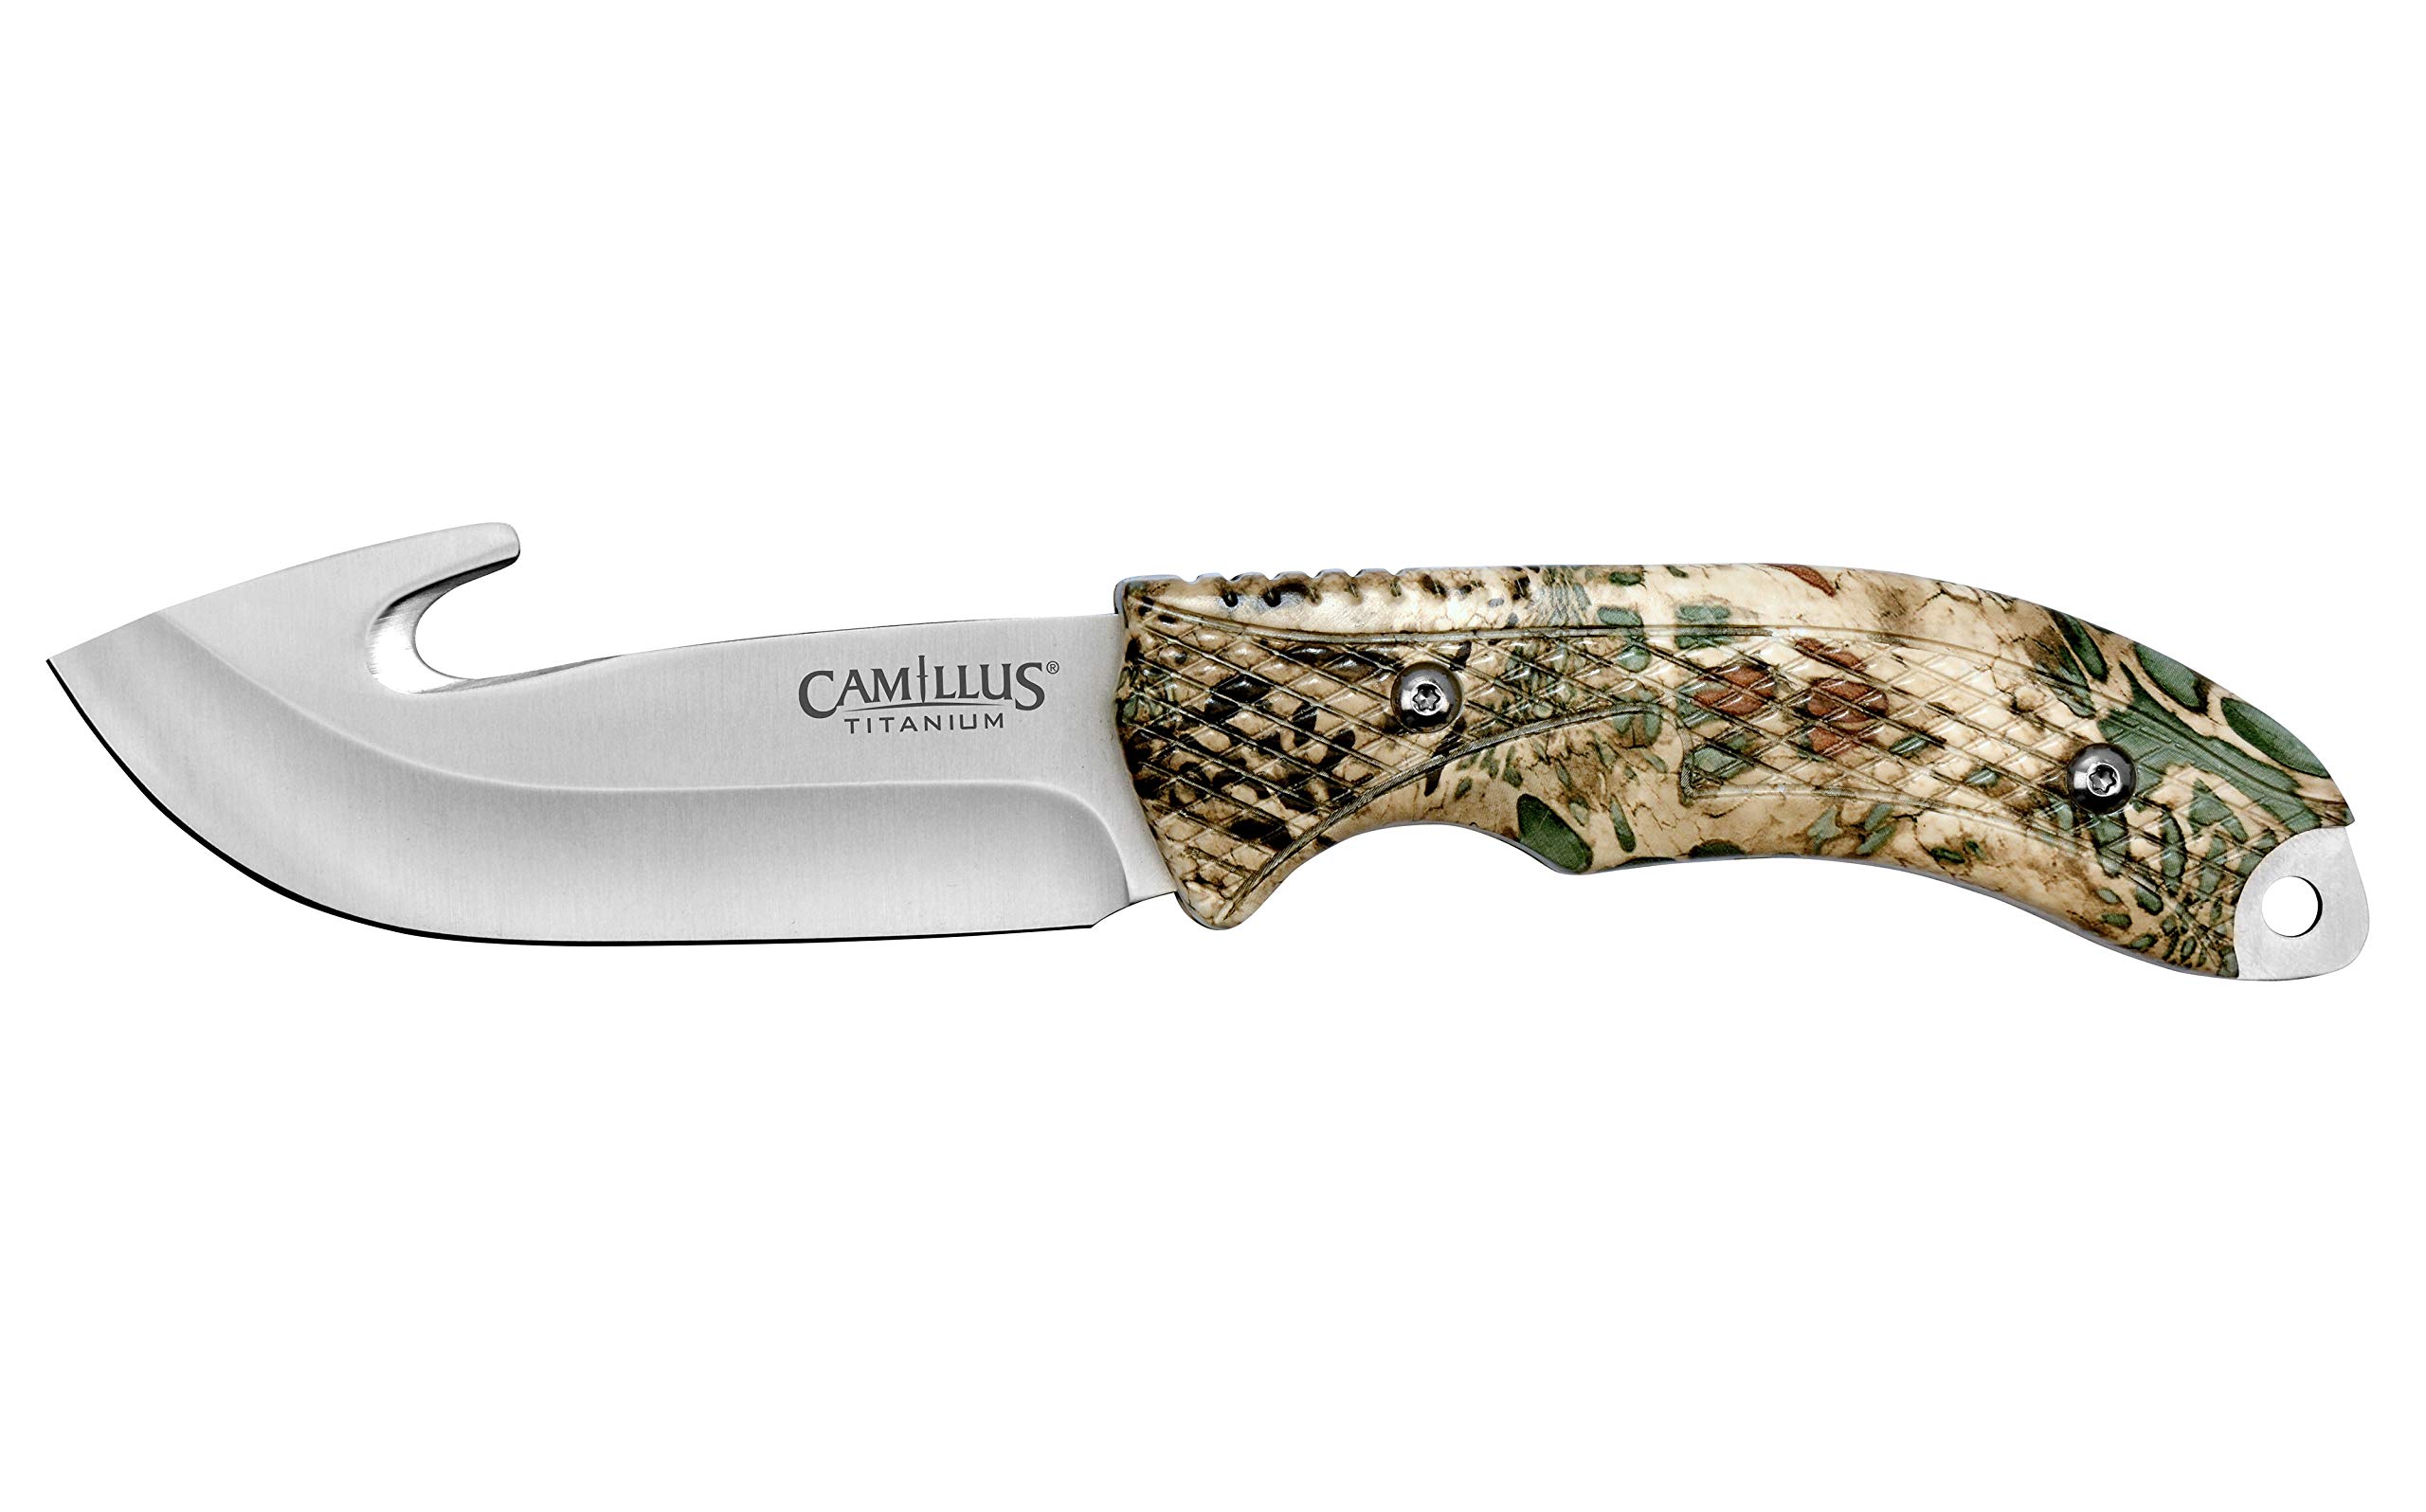 Camillus 19834 Veil Messer mit Haken, inklusive ballistischer Nylonscheide, 10,2 cm Titanium Bonded 420 Stahlklinge, PRYM1 Griff, Silber/Tarnfarben, 22,9 cm